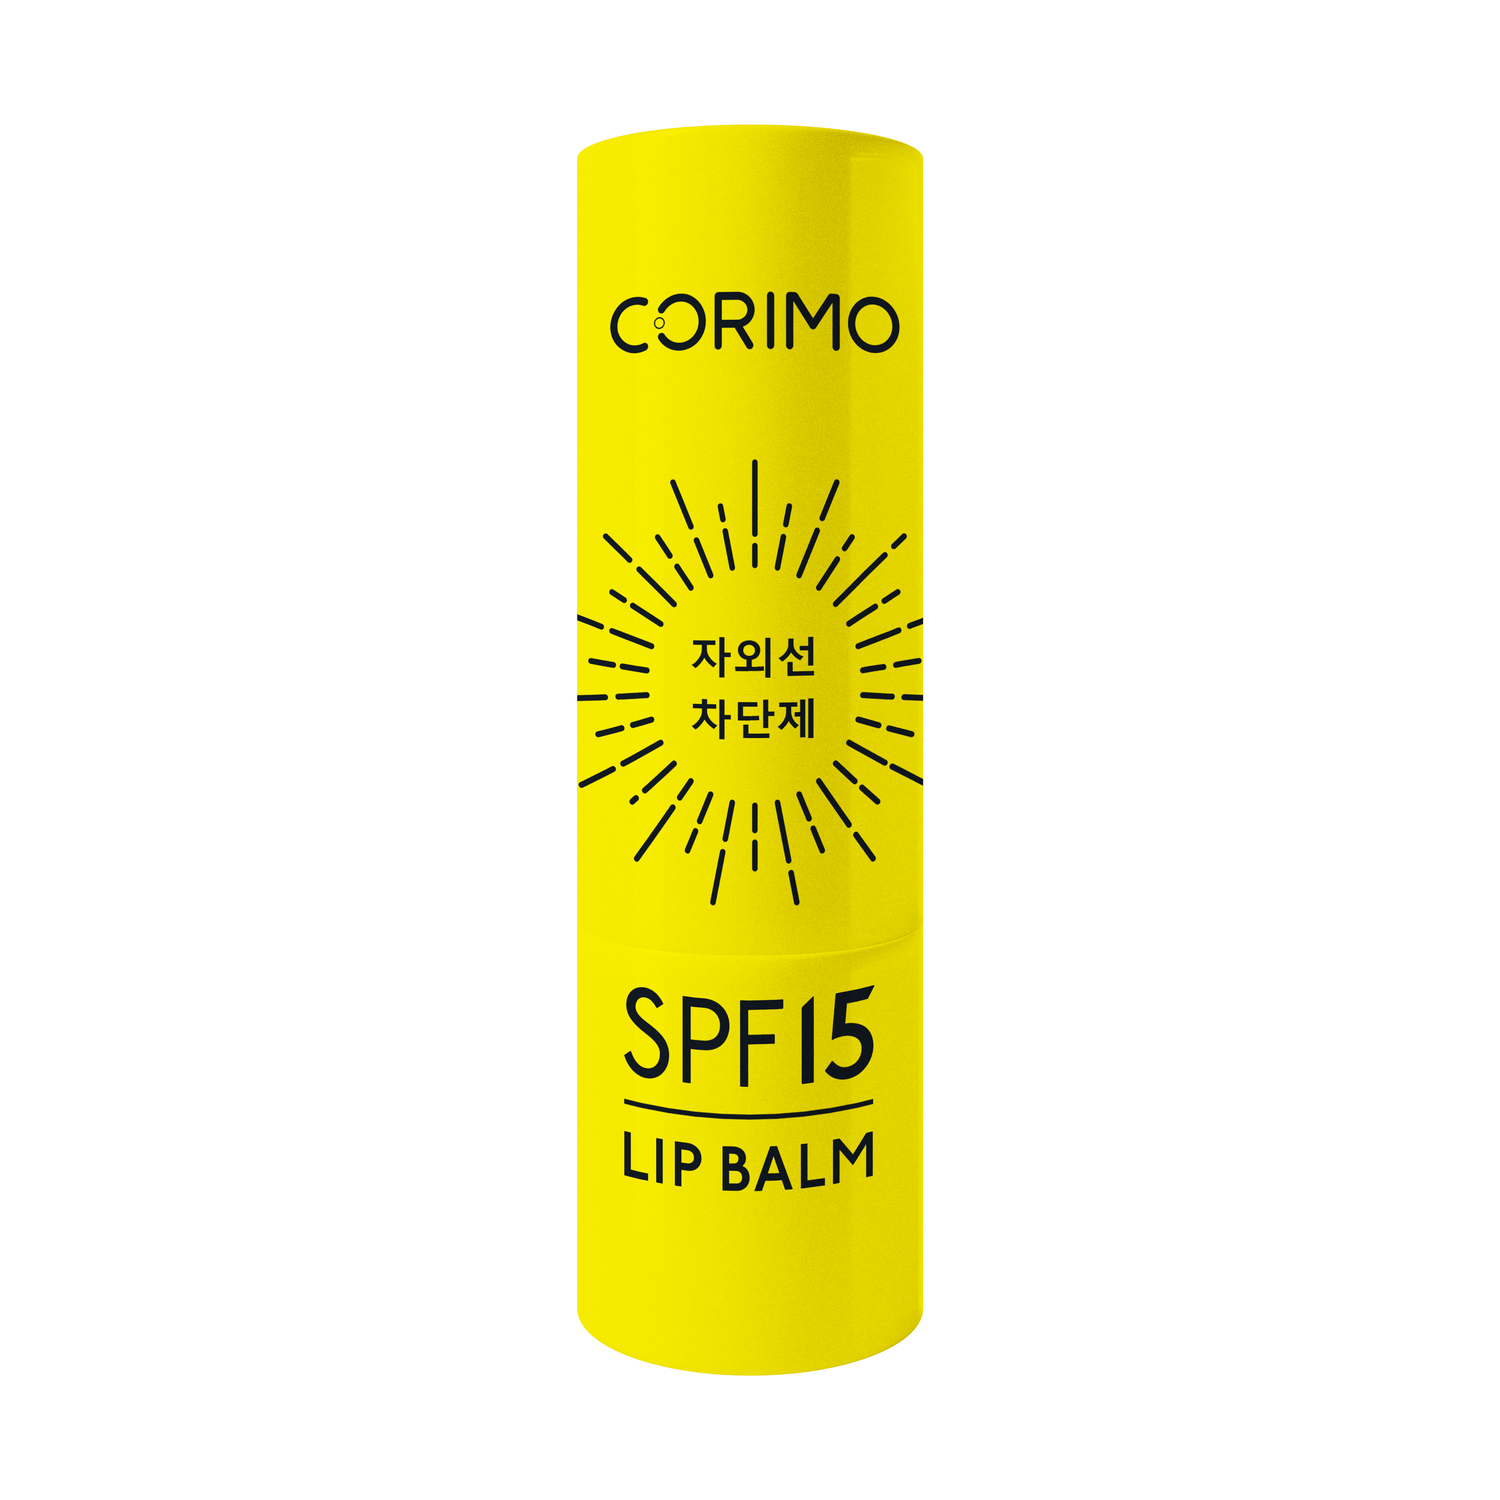 Увлажняющий бальзам CORIMO для губ SPF 15 с гиалуроновой кислотой - фото 2